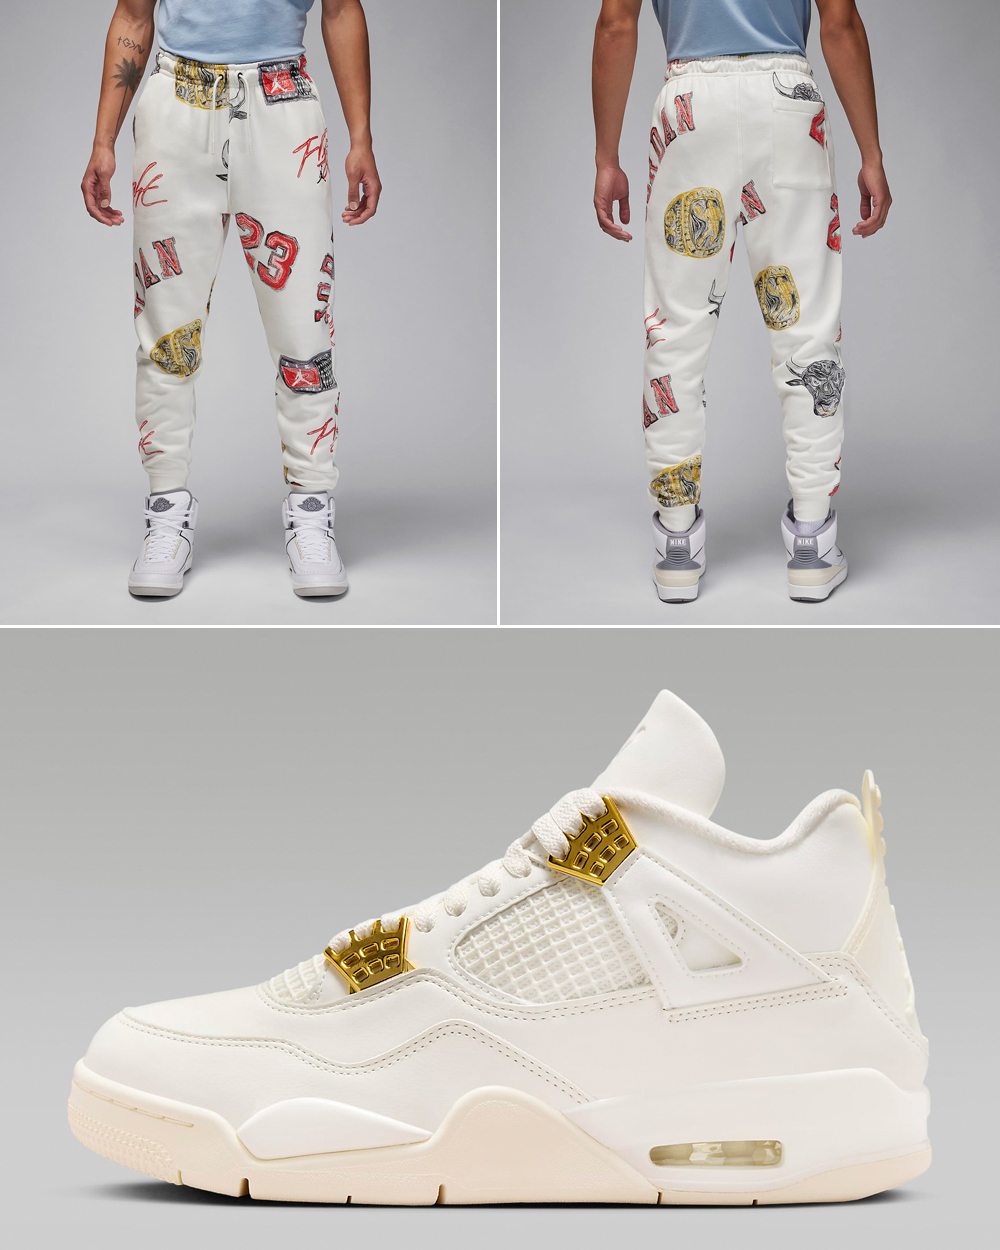 Air-Jordan-4-Sail-Metallic-Gold-Pants-Outfit